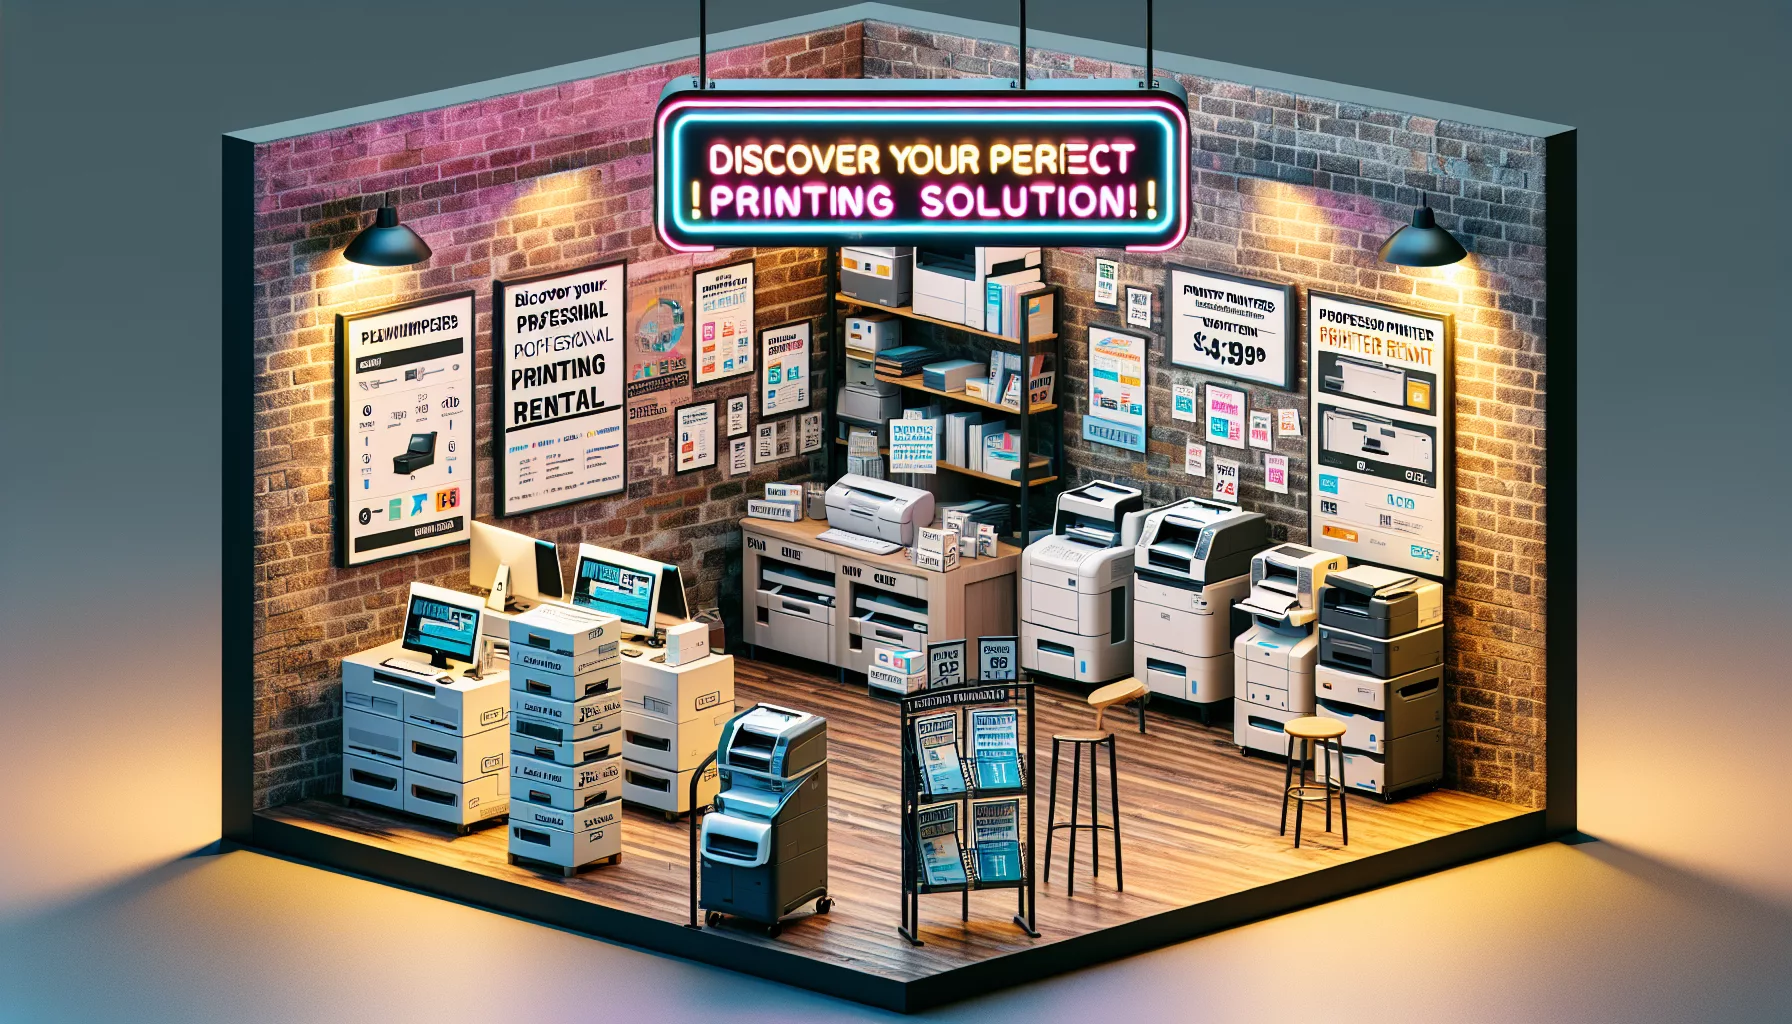 trouvez la solution idéale pour la location d'une imprimante professionnelle à bruxelles avec notre large gamme de modèles et services adaptés à vos besoins professionnels.